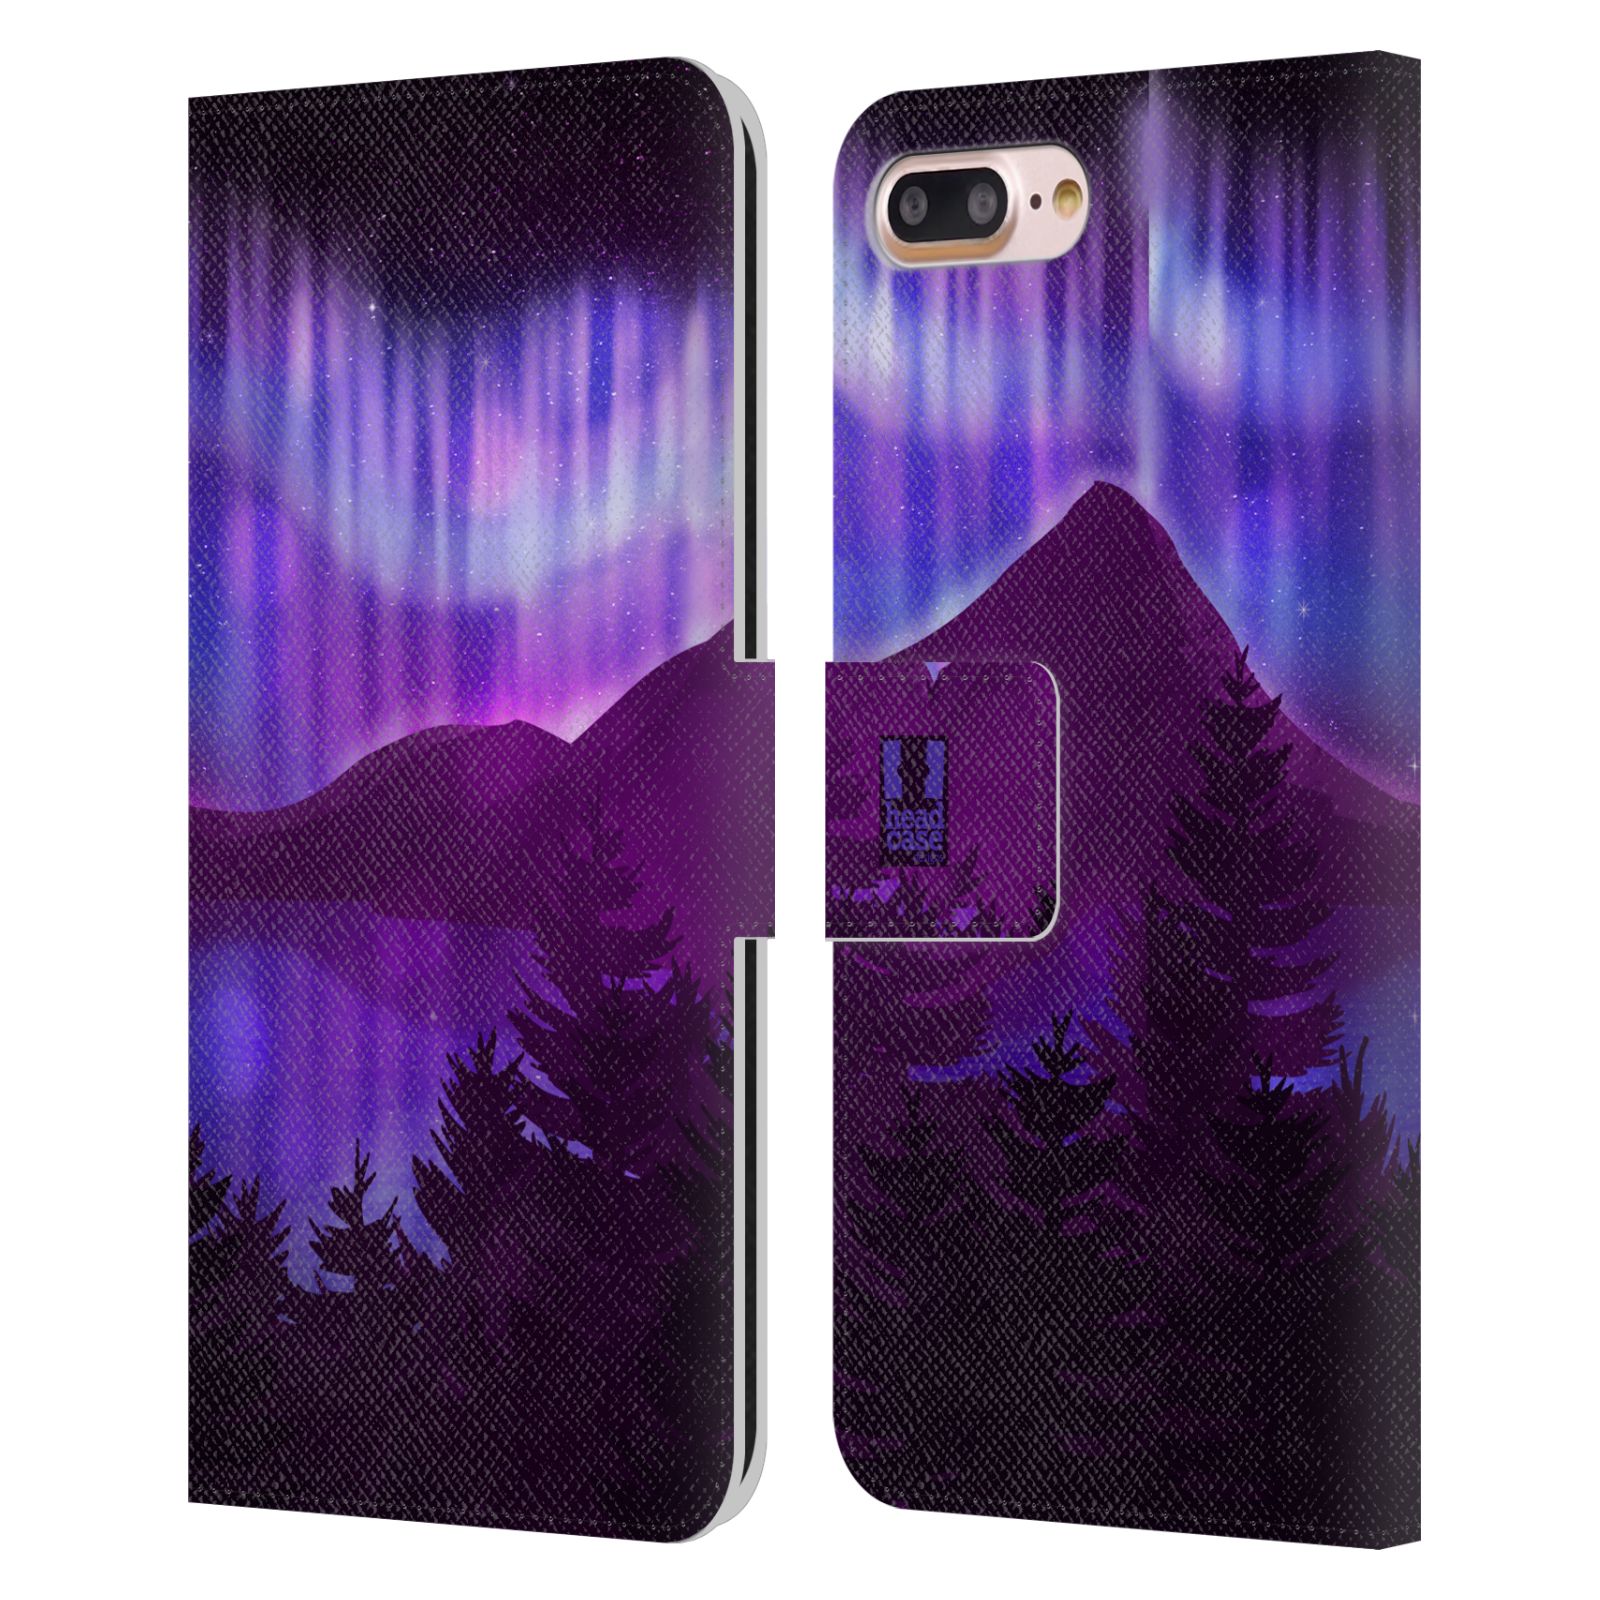 Pouzdro na mobil Apple Iphone 7+/8+ - HEAD CASE - Hory a lesy fialový odstín